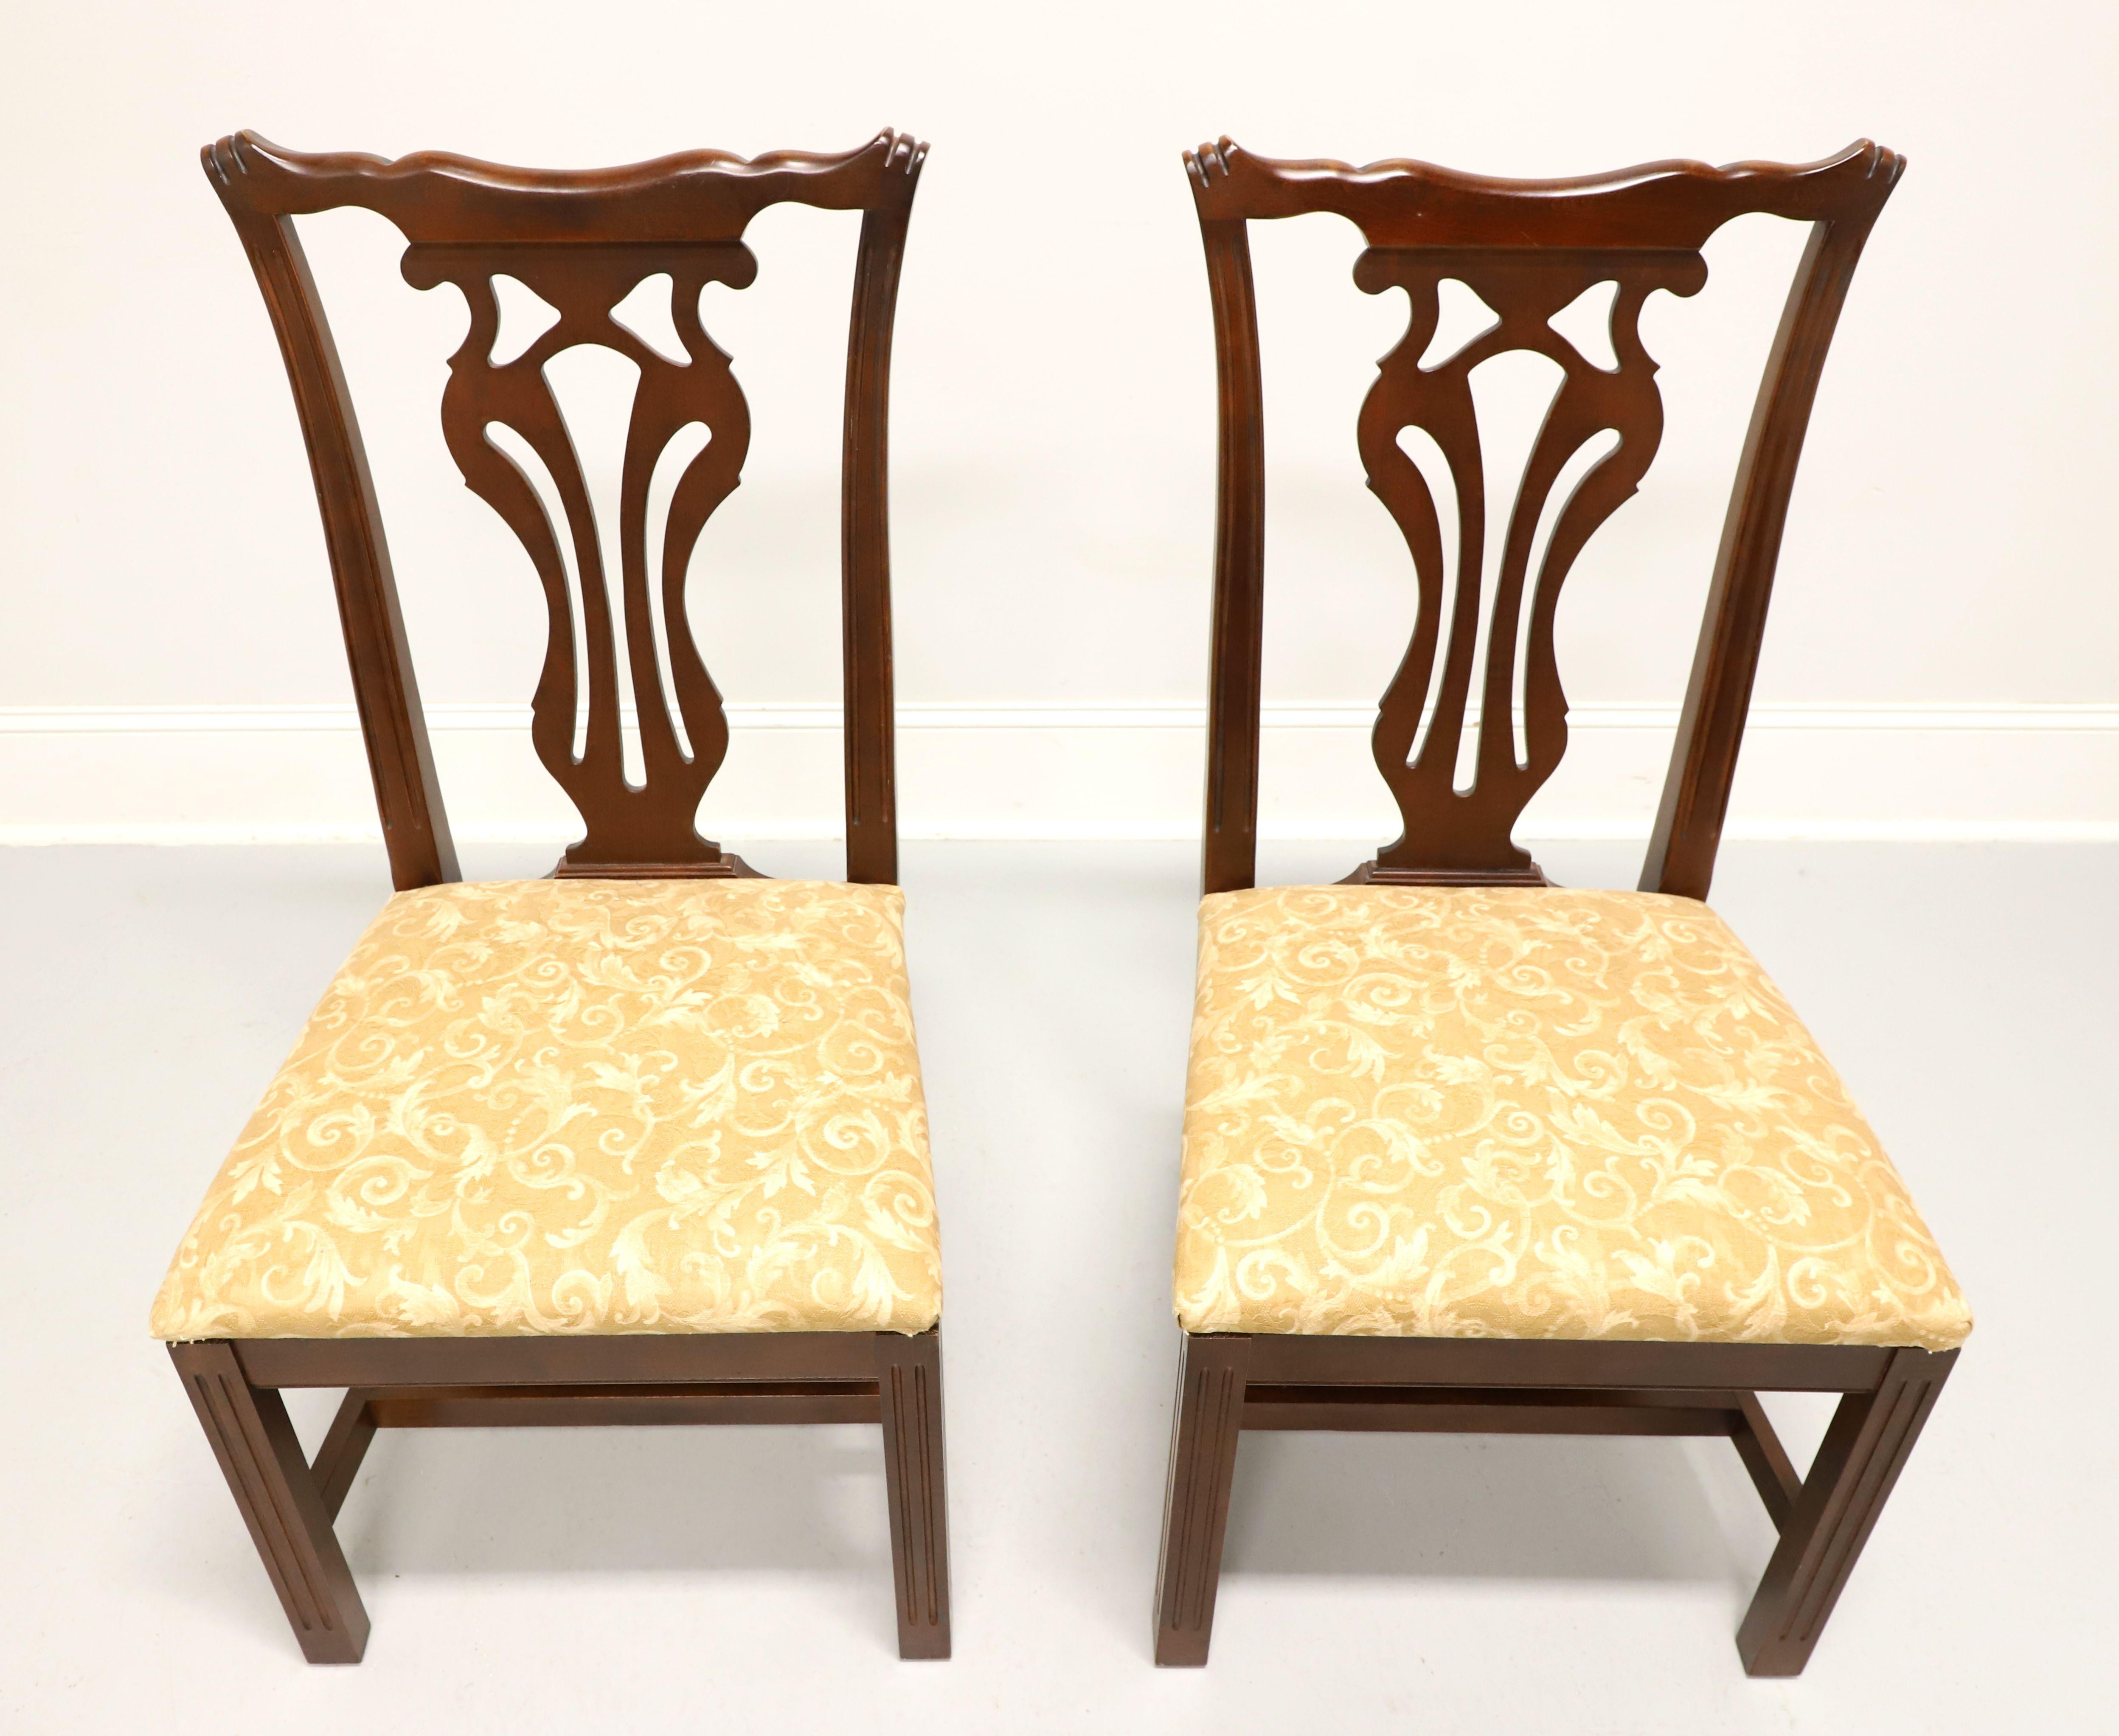 Paire de chaises d'appoint de style Chippendale par Knob Creek. Acajou avec dossiers sculptés, assise garnie de tissu brocardé or, piétement à entretoise et pieds droits. Fabriqué aux États-Unis, à la fin du 20e siècle.

Mesures :  Encombrement :